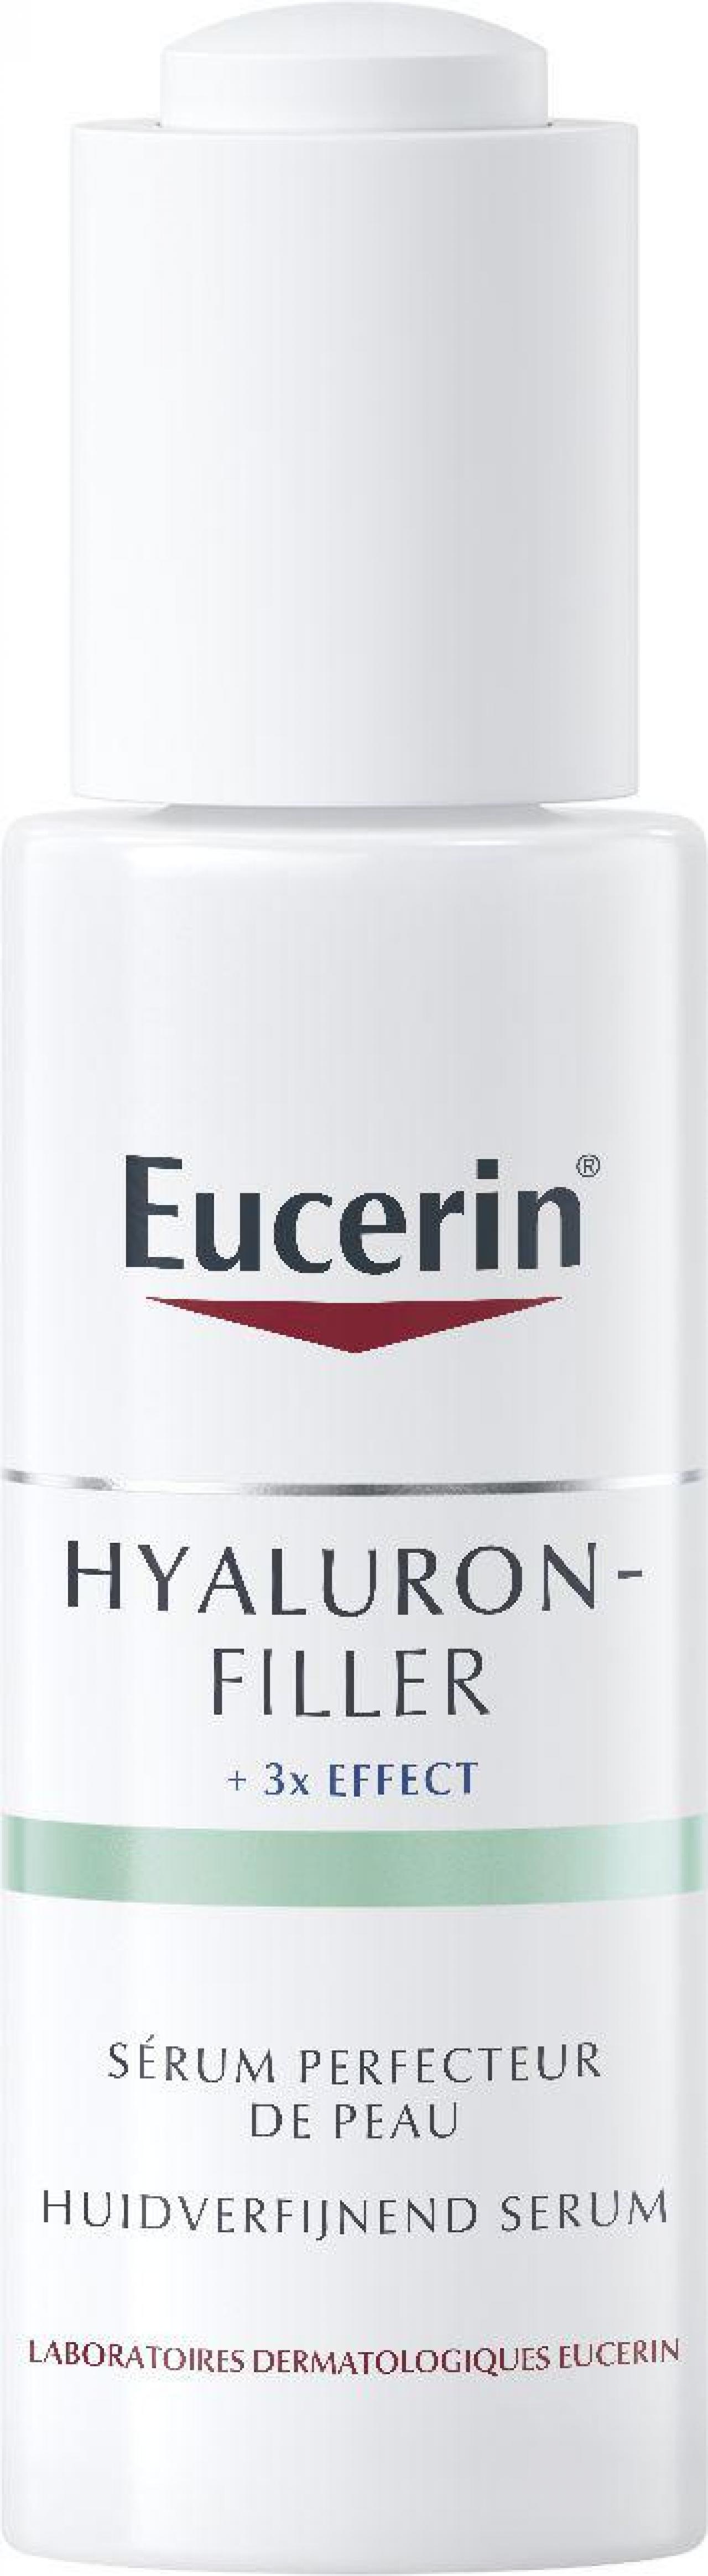 Het nieuwe huidverfijnende serum van Eucerin is geschikt voor alle huidtypes. Het bevat onder meer hyaluronzuur dat de huid er gladder en zachter uit laat zien.34,95 euro - www.eucerin.be